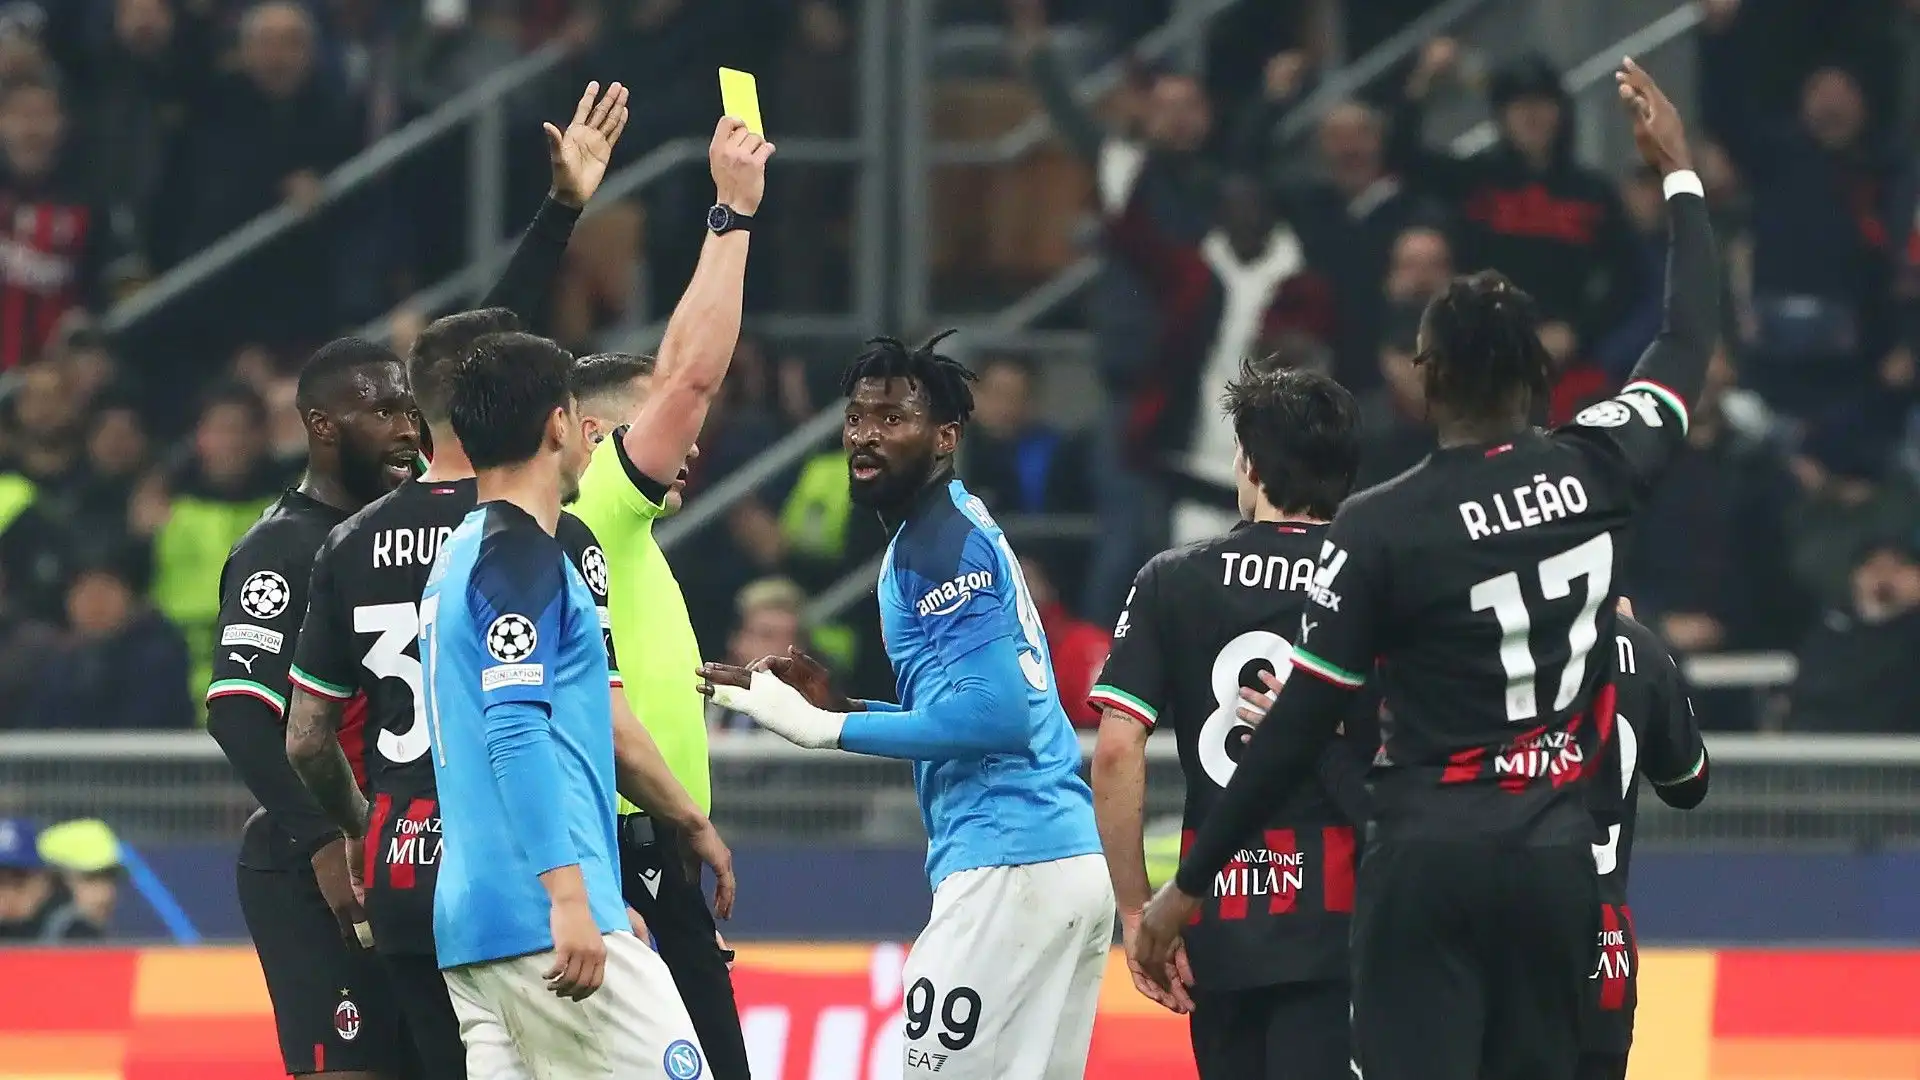 Il centrocampista del Napoli ha ricevuto il cartellino rosso per doppia ammonizione nella partita di Champions League contro il Napoli